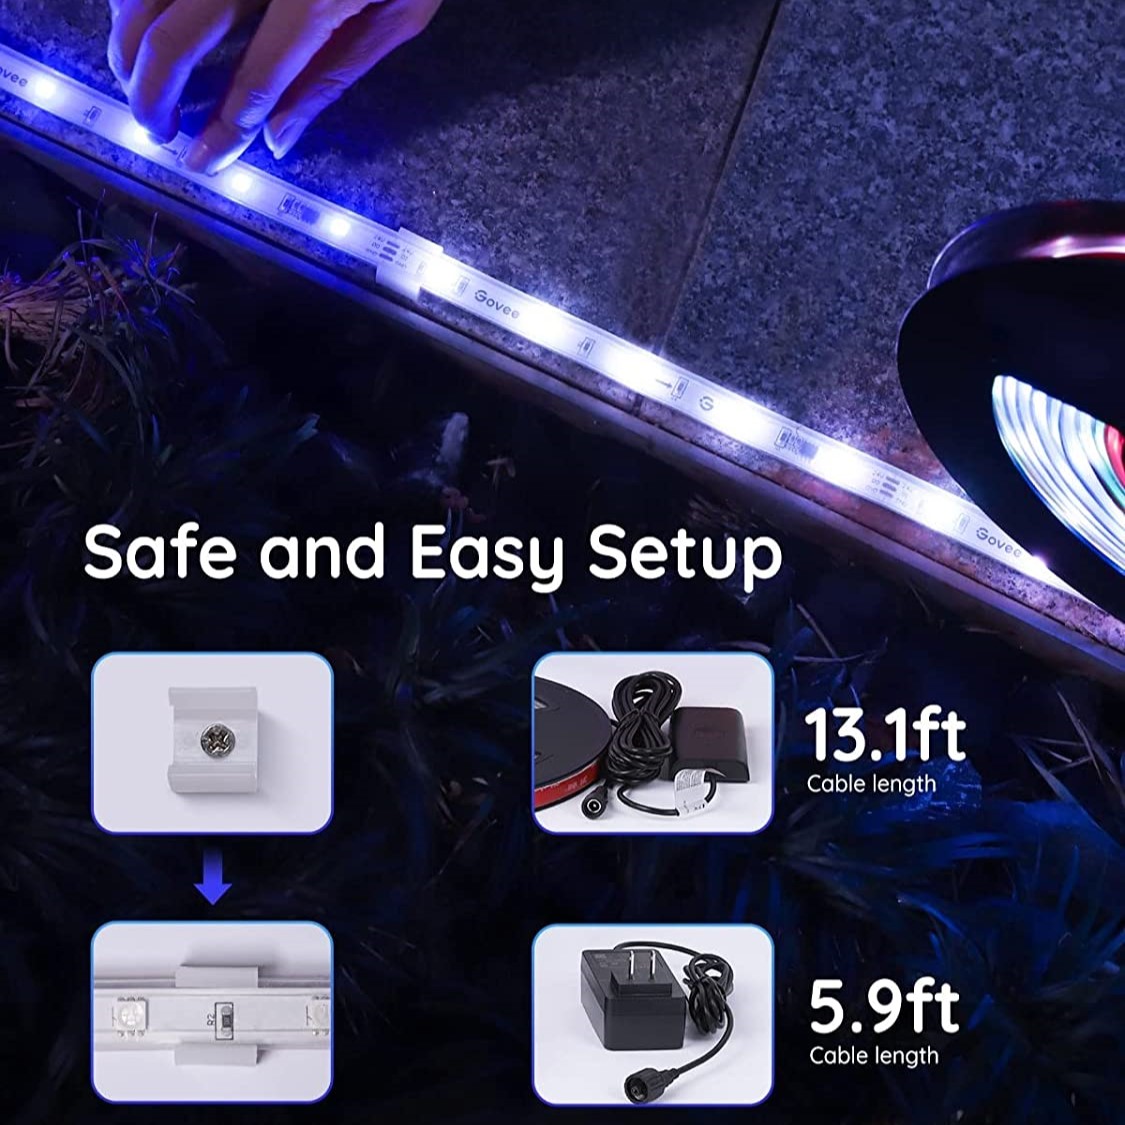 Đèn trang trí ngoài trời Govee Phantasy LED Outdoor RGBIC Strip Lights H6171 | Kháng nước, kết nối thông minh, tùy chỉnh màu sắc | Hàng chính hãng